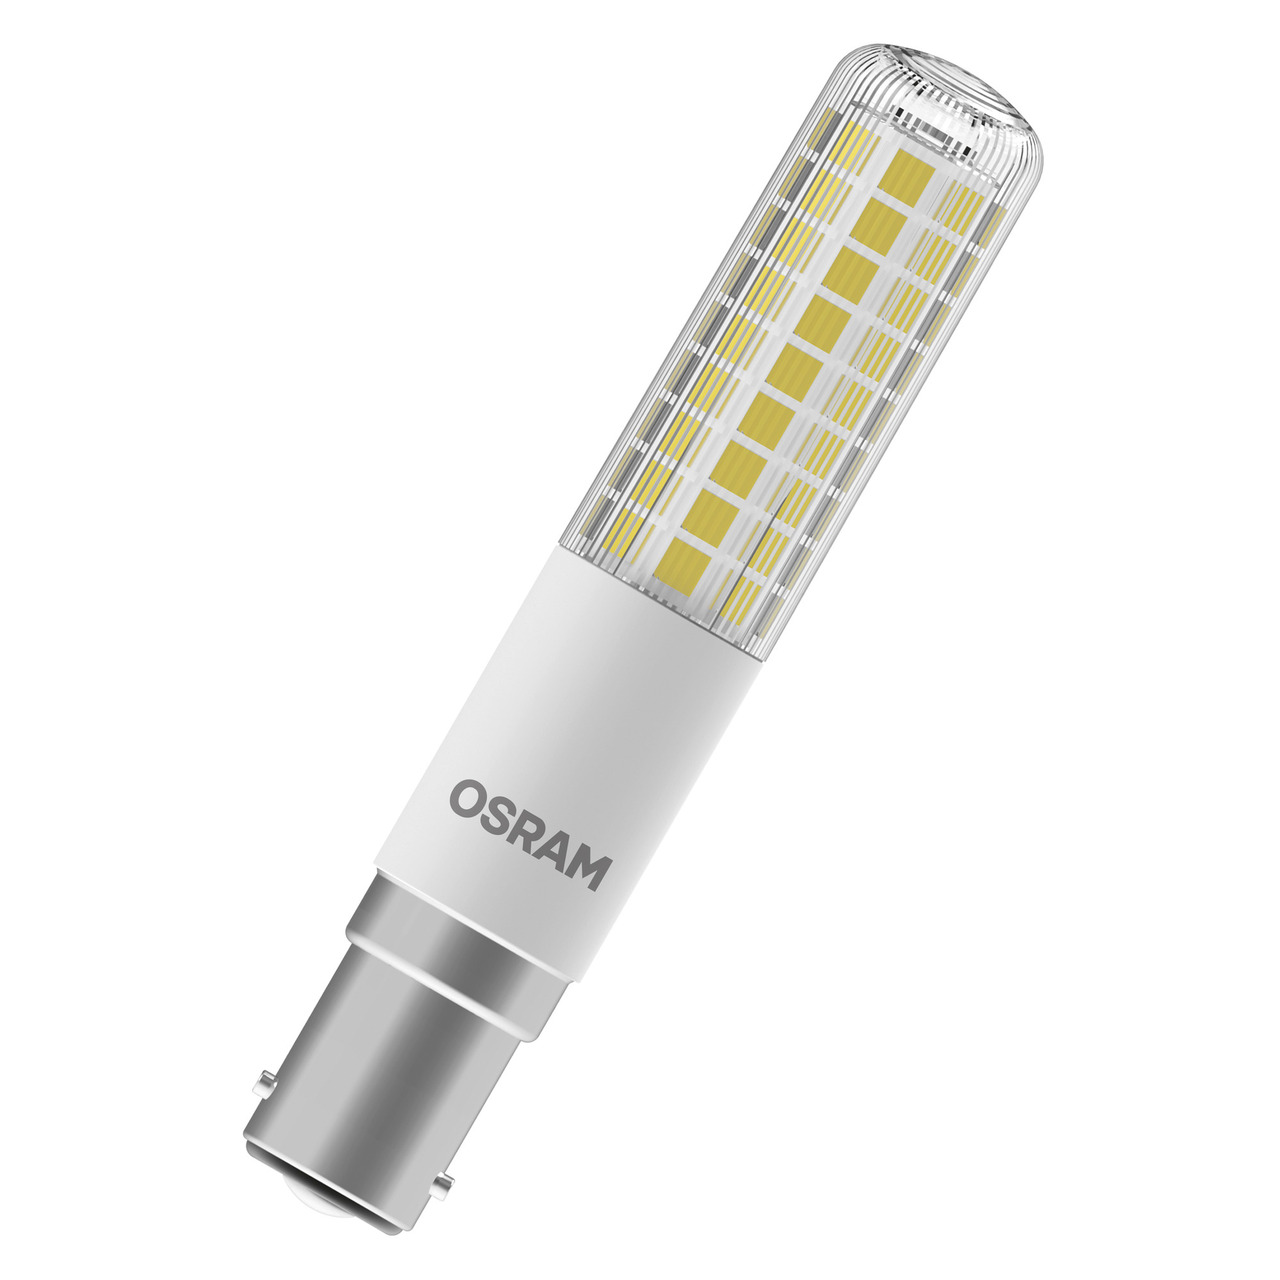 OSRAM 9-W-LED-Lampe T18- B15d- 1055 lm- warmweiss (2700 K)- dimmbar